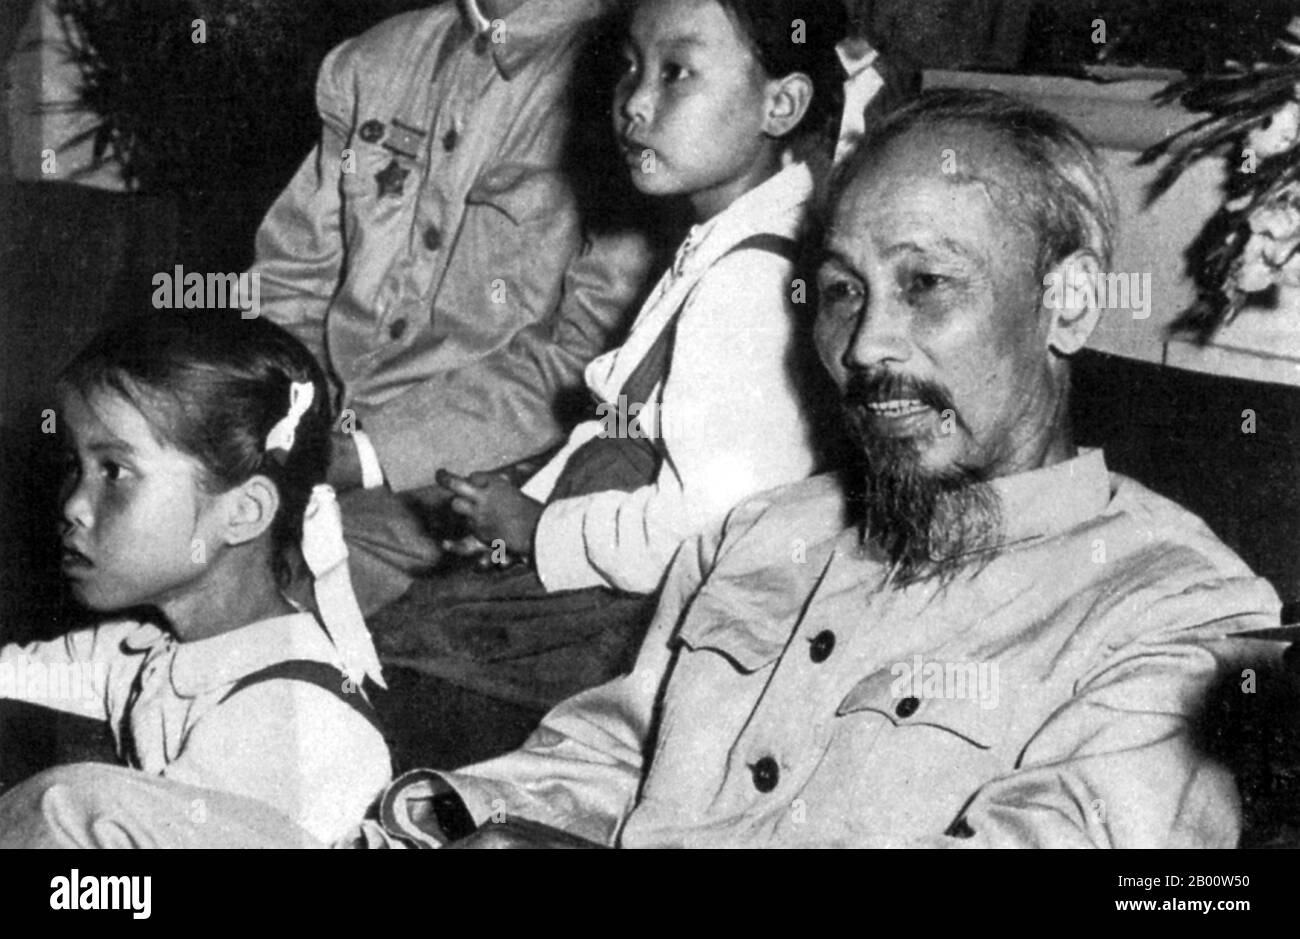 Vietnam: Président Ho Chi Minh avec les enfants des écoles vietnamiennes. Icône vietnamienne Hồ Chí Minh (19 mai 1890 – 2 septembre 1969) est un leader révolutionnaire marxiste vietnamien qui a été Premier ministre (1945–1955) et président (1945–1969) de la République démocratique du Vietnam (Nord du Vietnam). Il a dirigé les Vietcong pendant la guerre du Vietnam jusqu'à sa mort. Il est intéressant de noter qu'avant de prendre les armes et finalement de vaincre l'armée américaine, Ho Chi Minh a travaillé aux États-Unis comme aide de chef sur un navire et comme boulanger à Harlem, New York. Banque D'Images